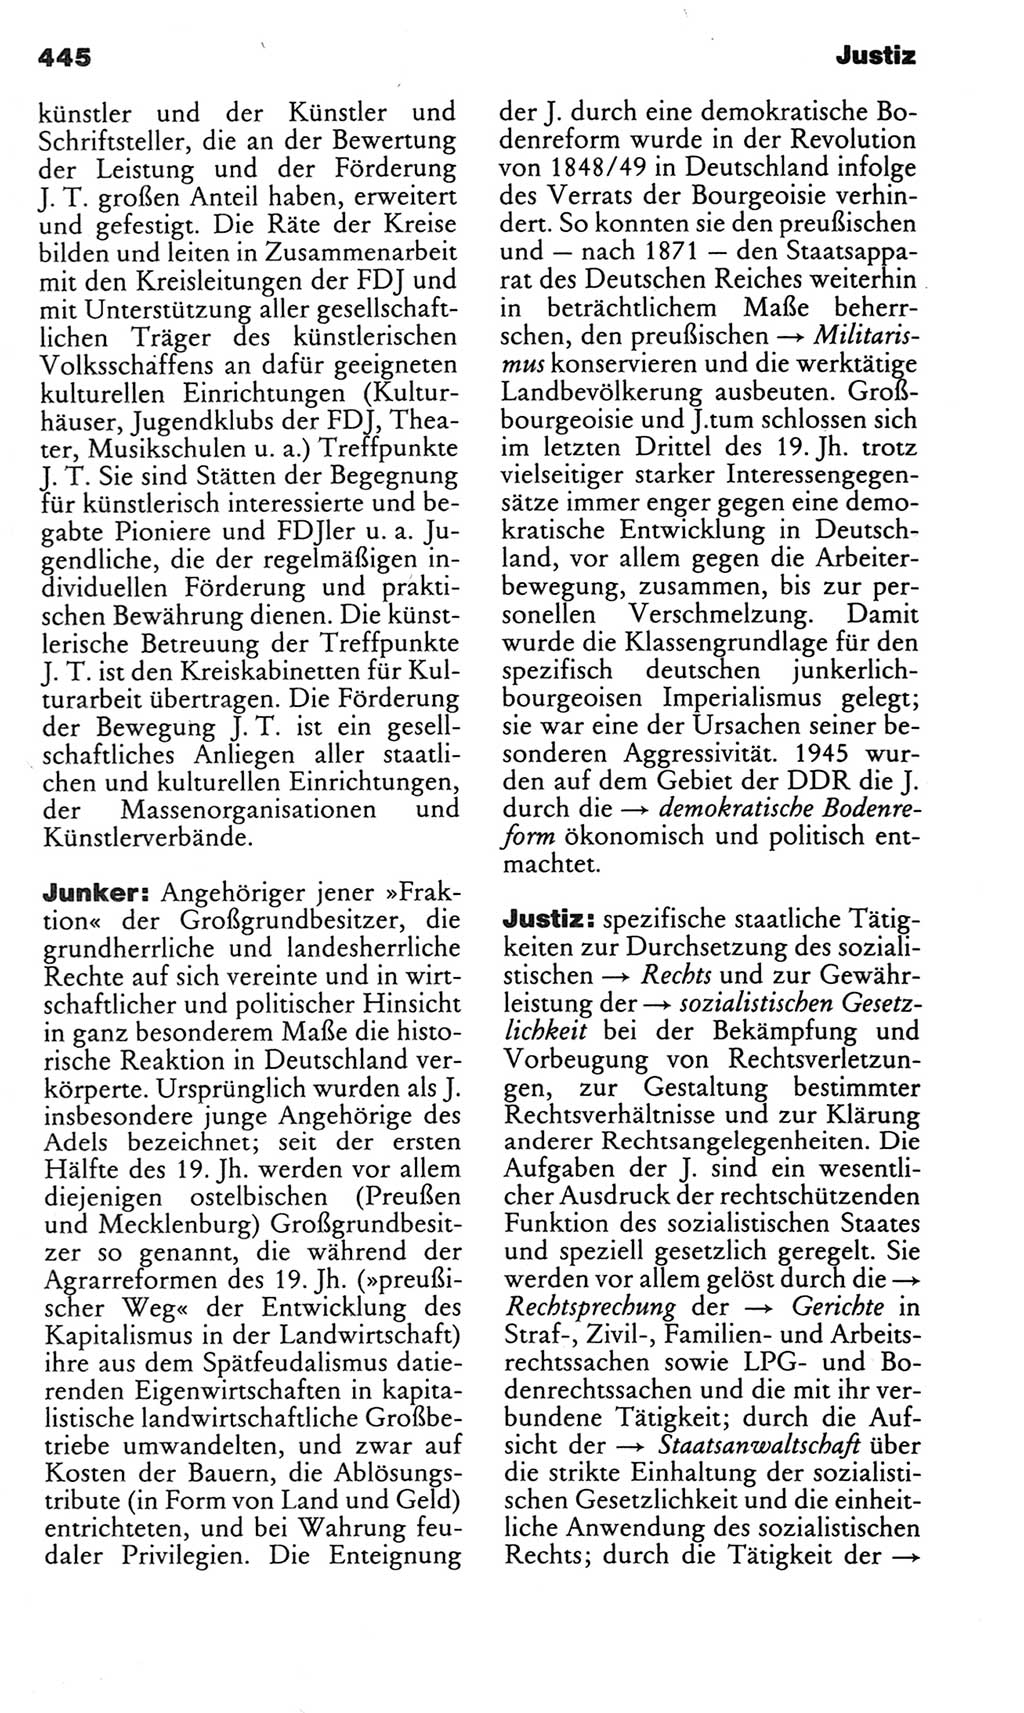 Kleines politisches Wörterbuch [Deutsche Demokratische Republik (DDR)] 1983, Seite 445 (Kl. pol. Wb. DDR 1983, S. 445)